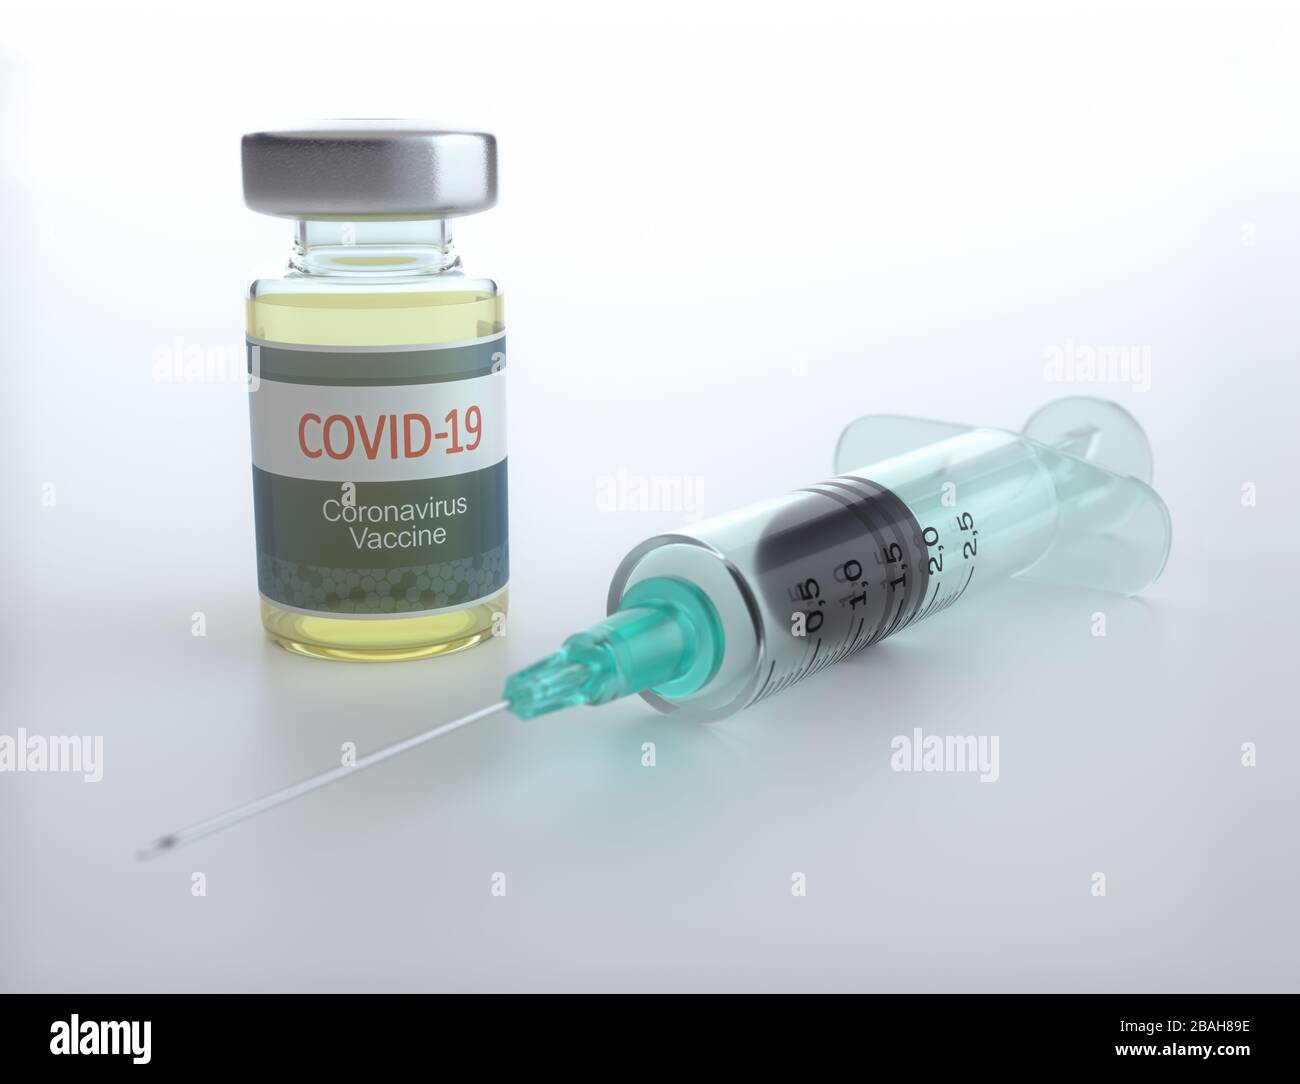 Covid-19 vaccine, conceptual image Stock Photo